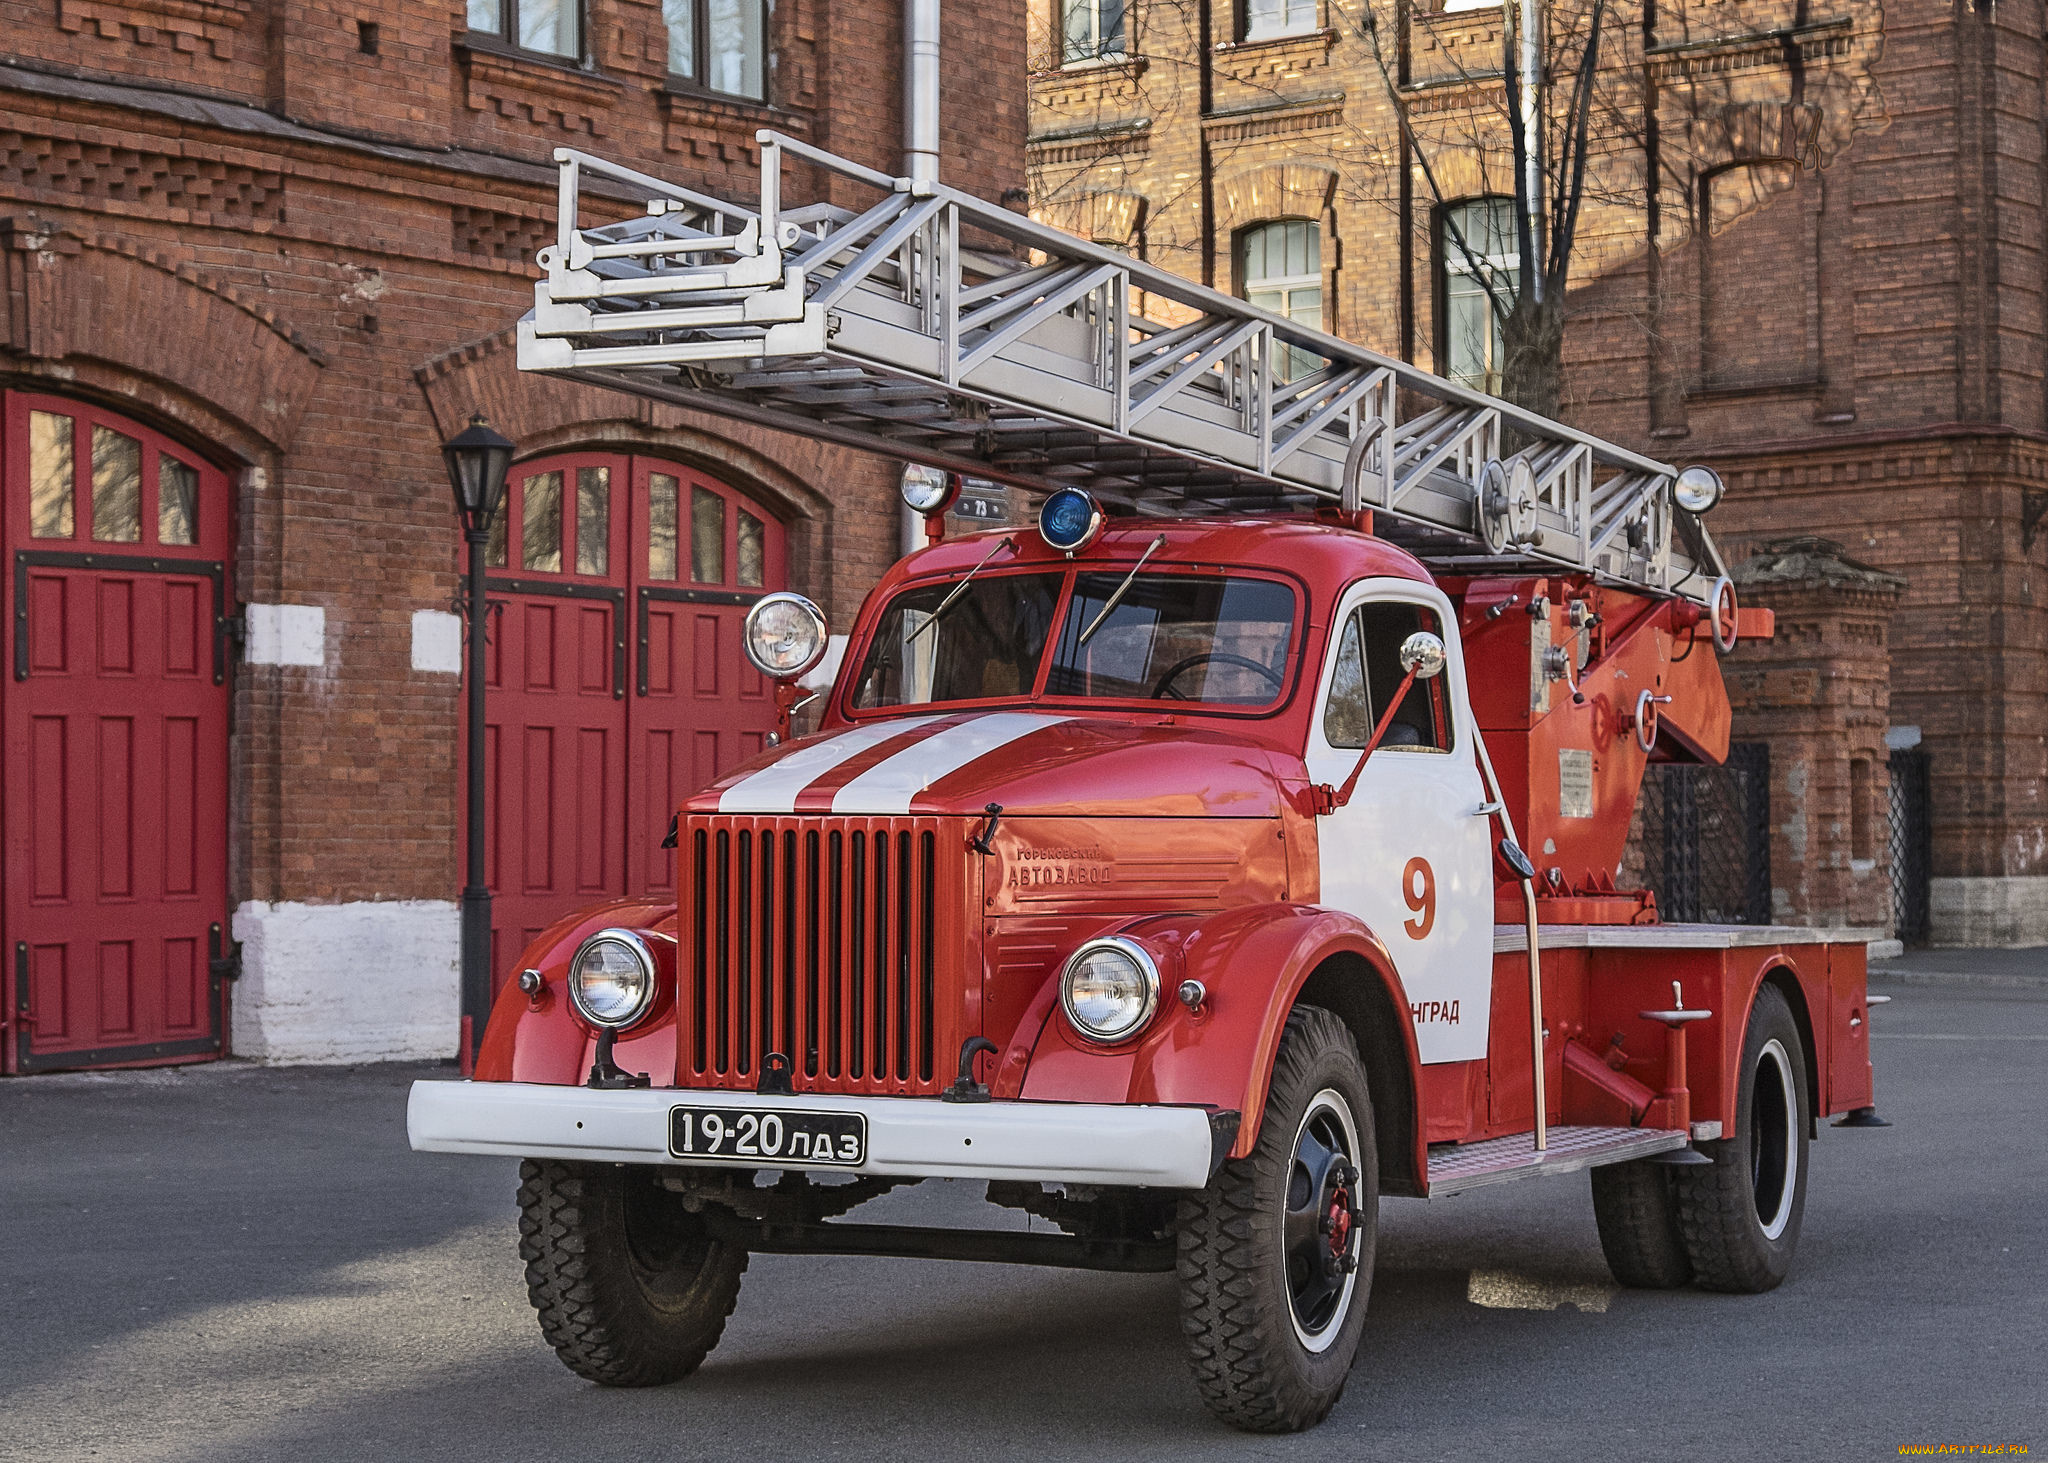 Пожарка цена. Пожарная автолестница ГАЗ 51. ГАЗ 51 пожарная машина. ГАЗ 53 автолестница. ГАЗ 52 пожарная автолестница.